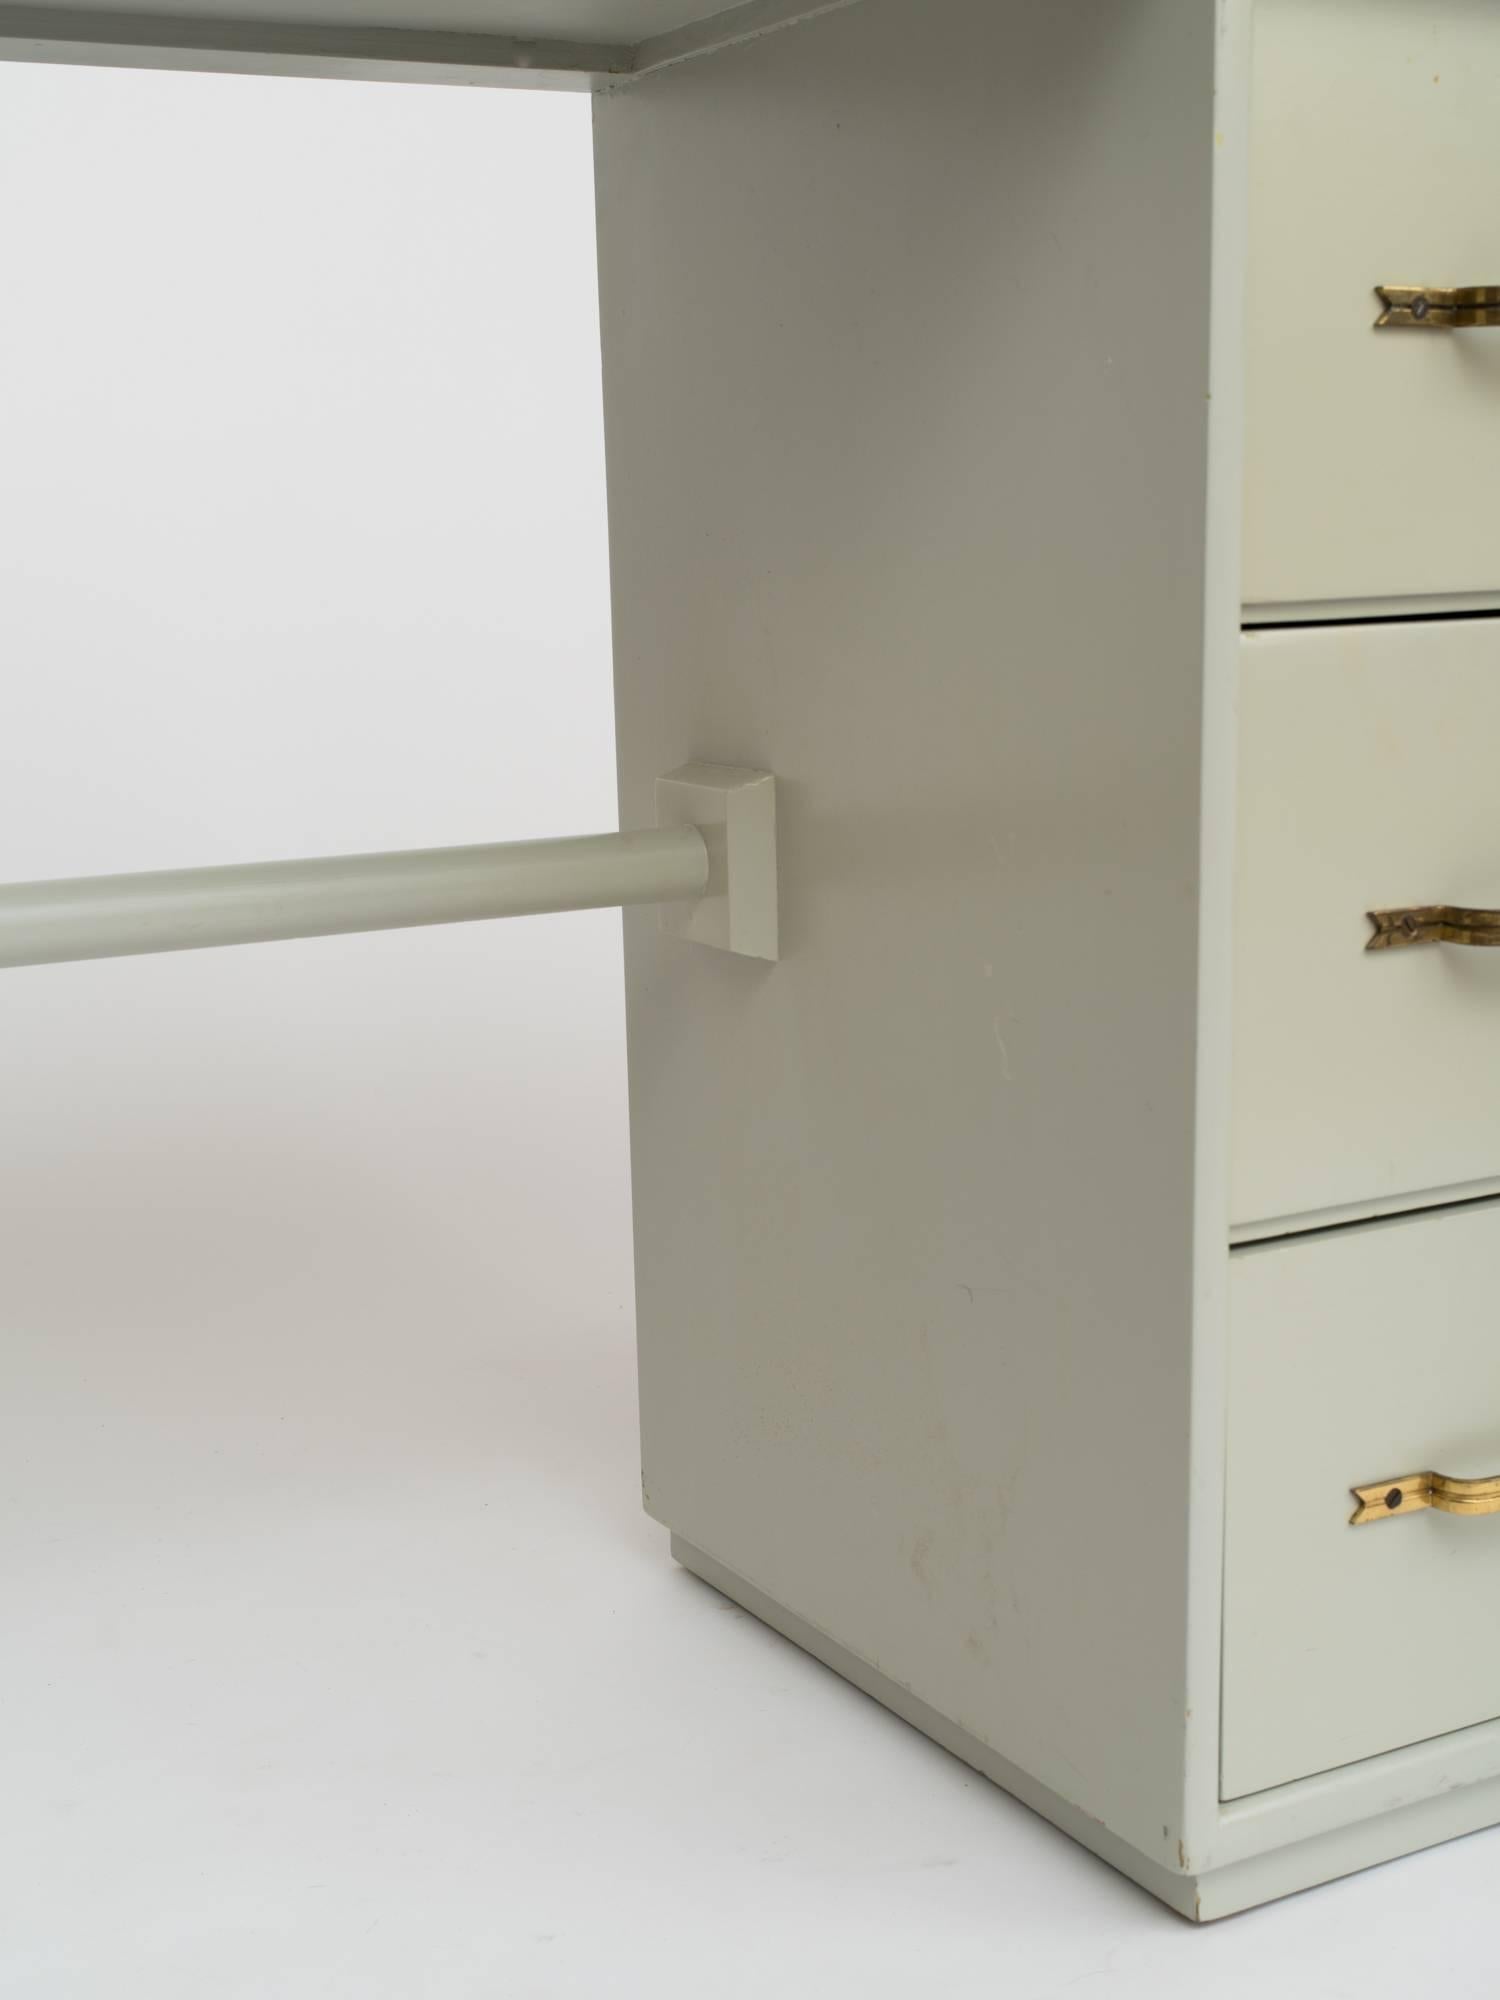 Tommi Parzinger zugeschriebener Winkelschreibtisch aus keladonlackiertem Holz, um 1950. Drei tiefe Schubladen mit charakteristischen Messinggriffen. Loch in der Oberseite, wo zuvor die eingebaute Lampe angebracht war. Lackschäden, Schreibtisch muss